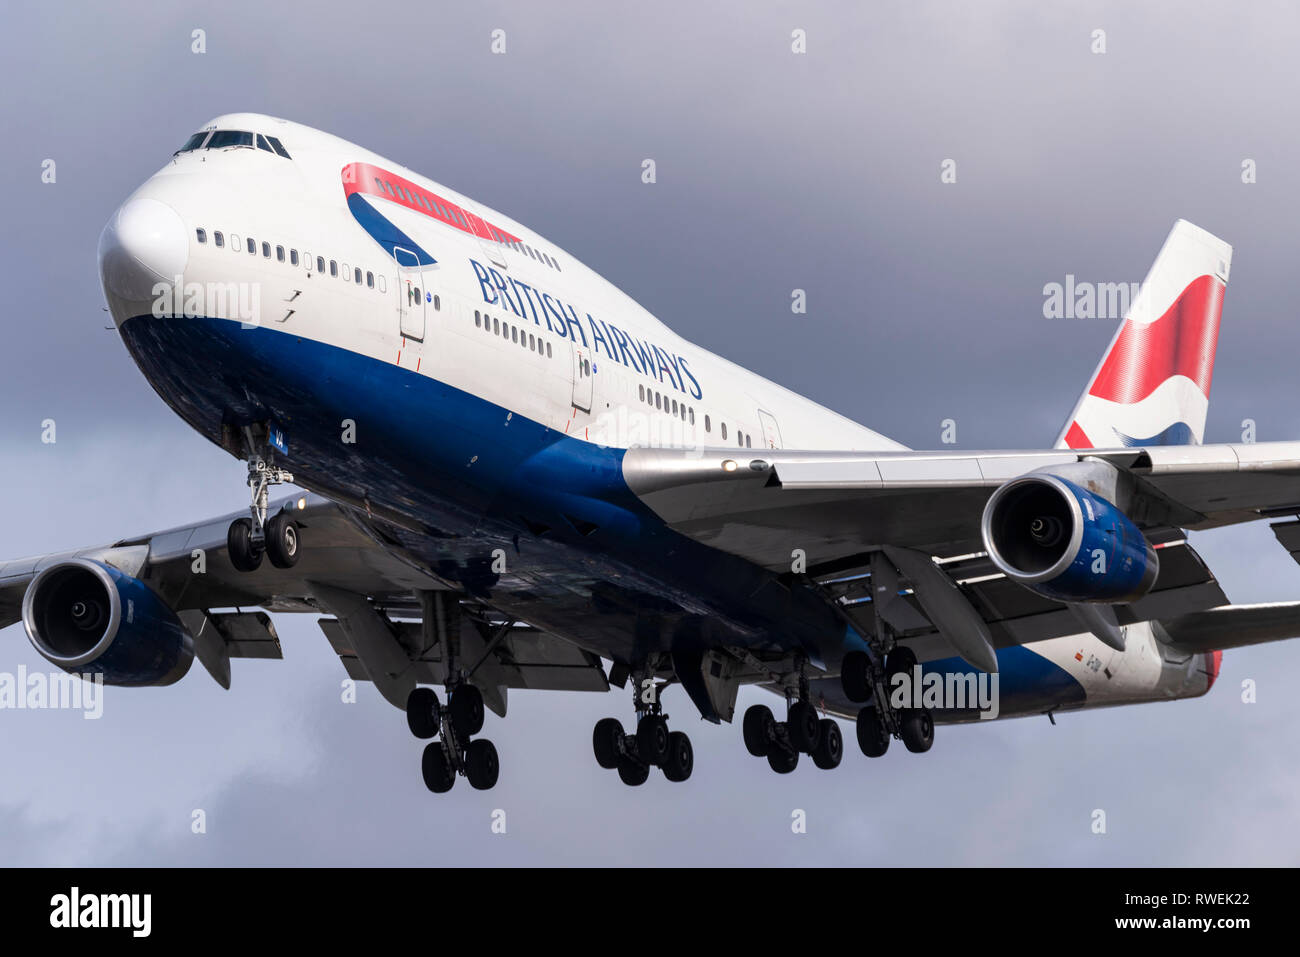 British Airways Boeing 747 Jumbo Jet aereo di linea G-CIVA atterrando all'aeroporto di Londra Heathrow, Regno Unito Foto Stock